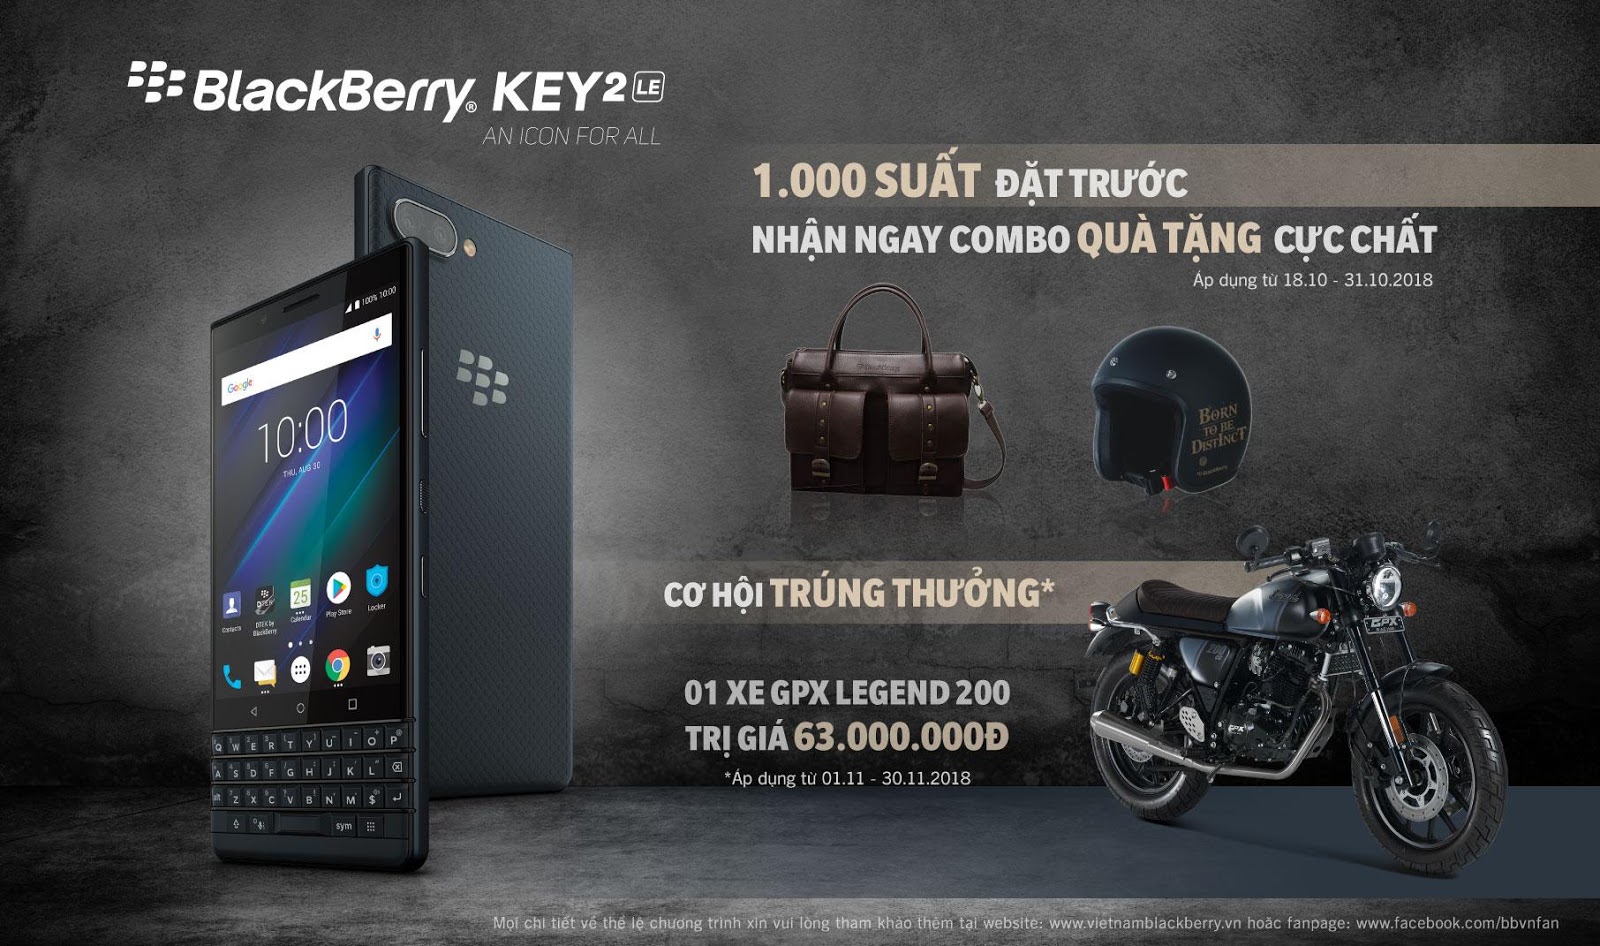 BlackBerry KEY2 LE ra
mắt tại Việt Nam: Phiên bản rút gọn của KEY2, giá 11.790.000
VNĐ